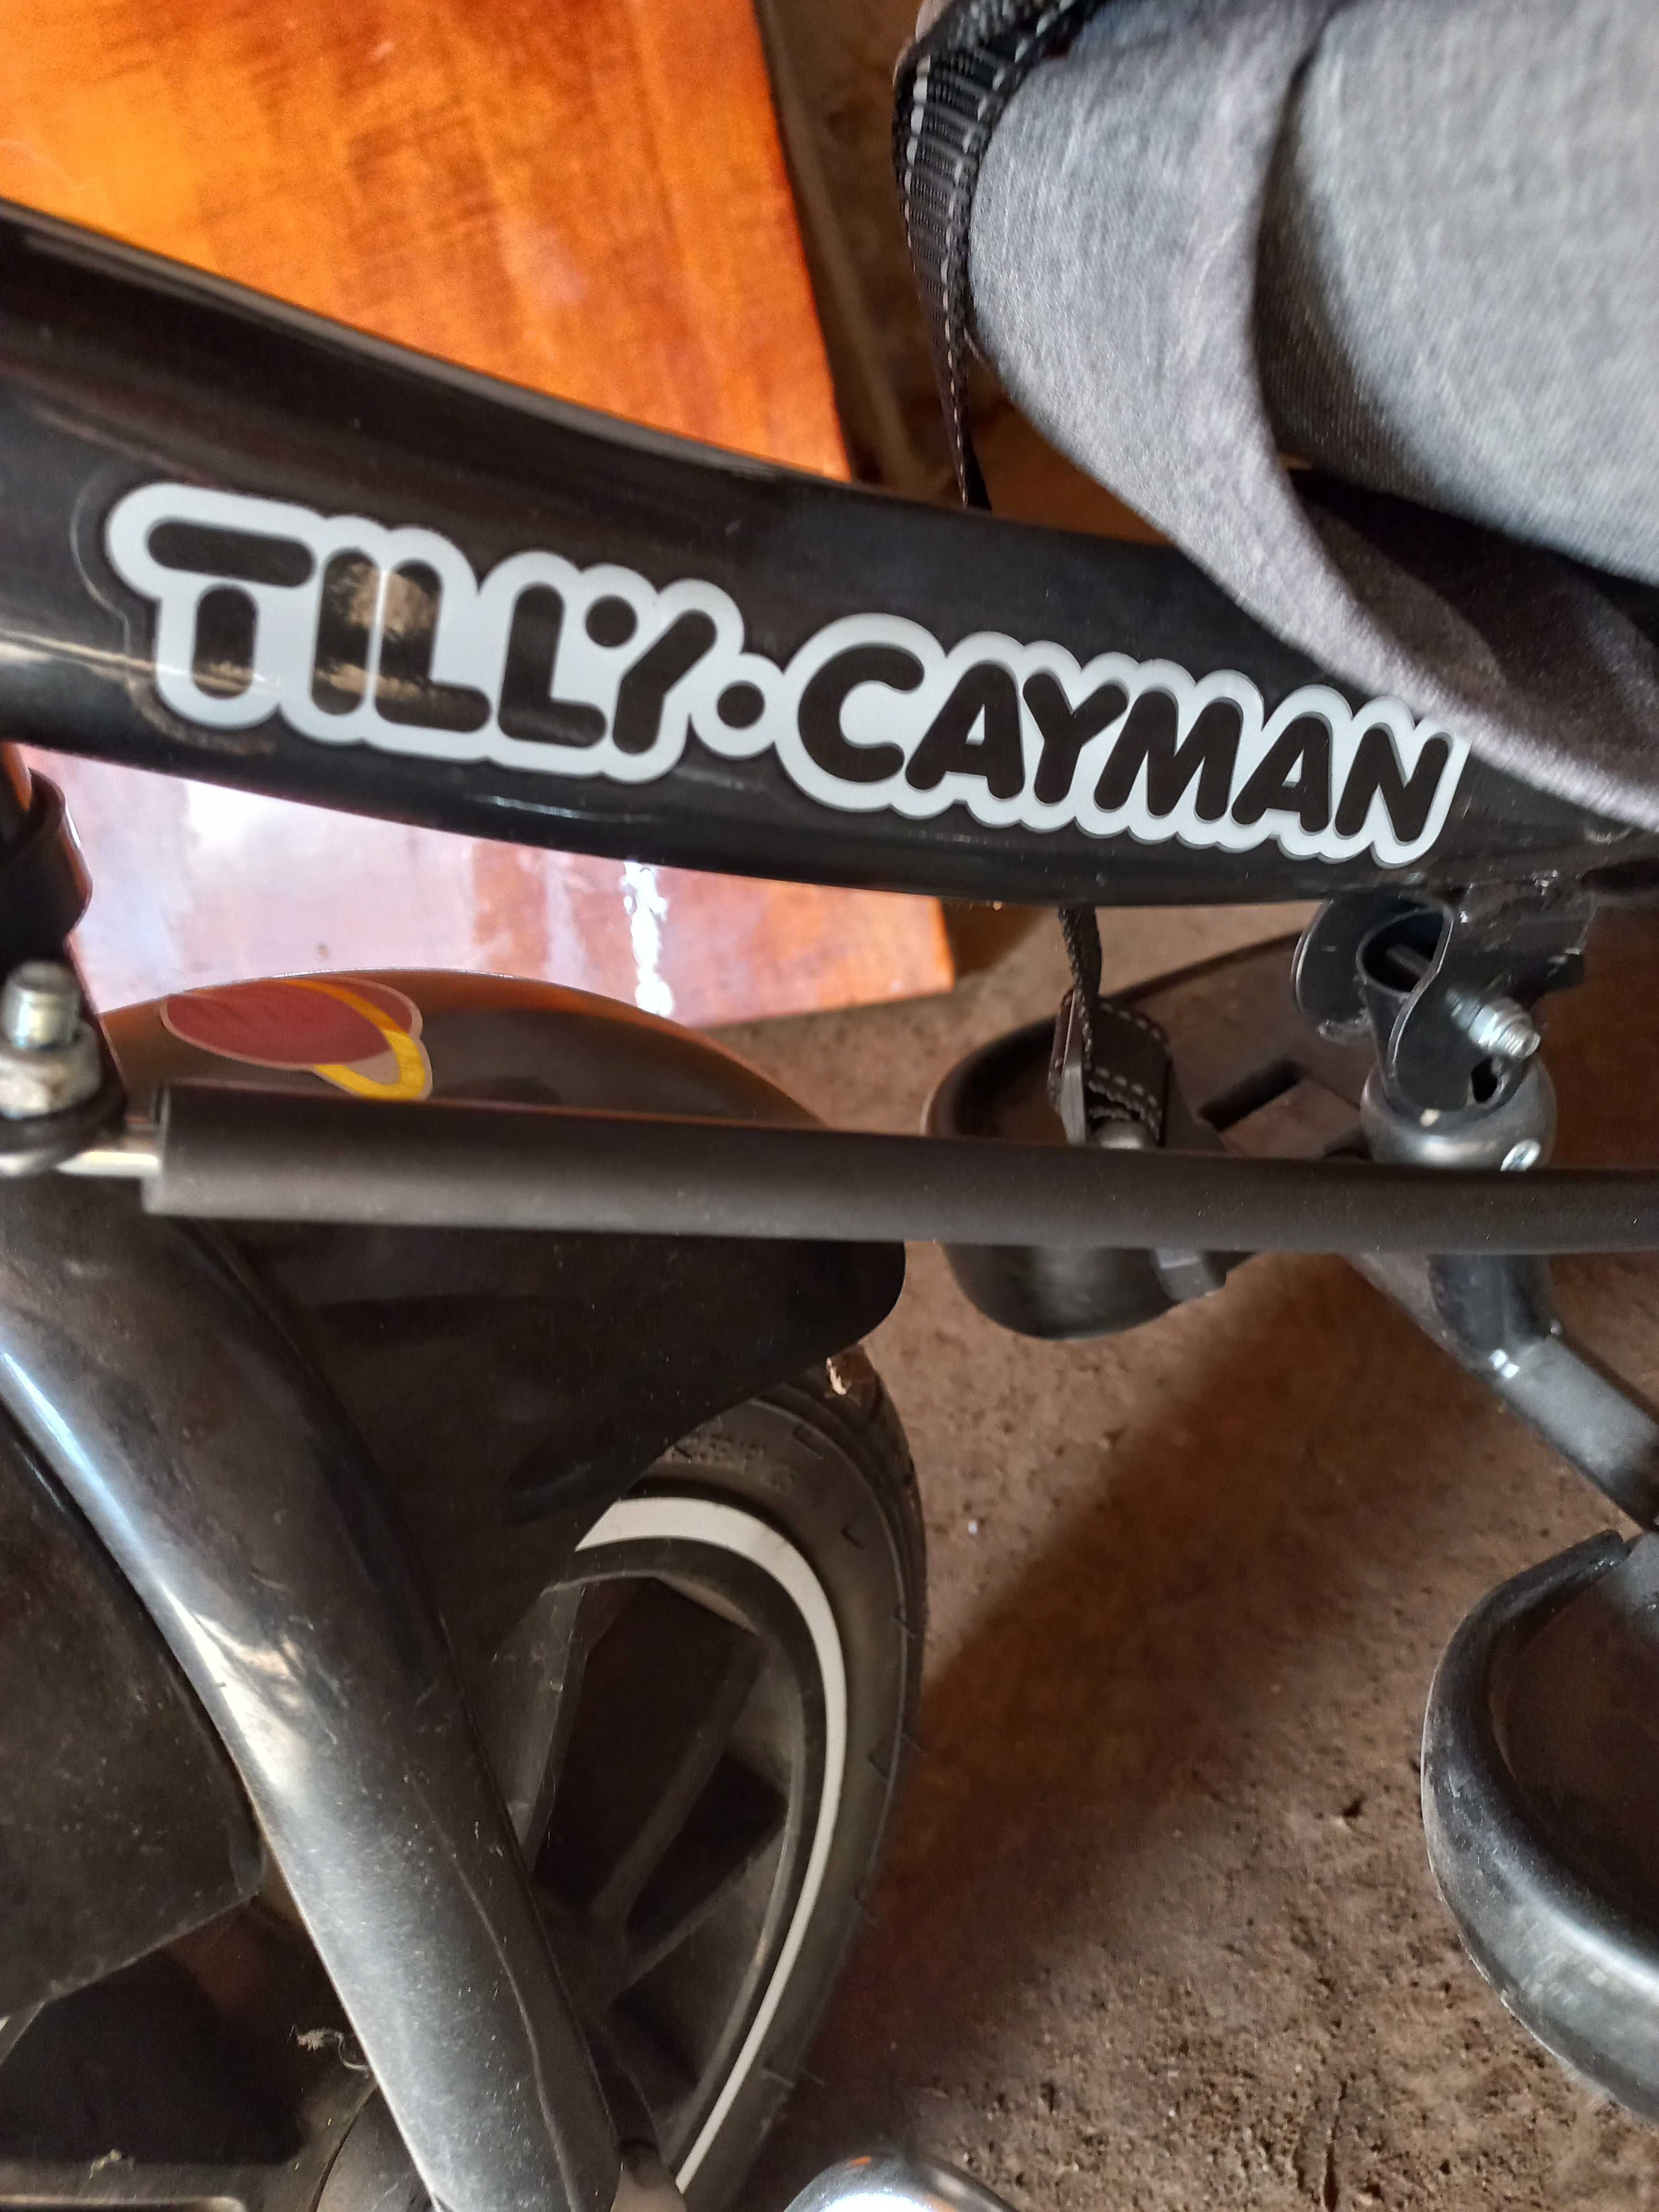 Tilly Cayman Велосипед (Торг)трьохколісний